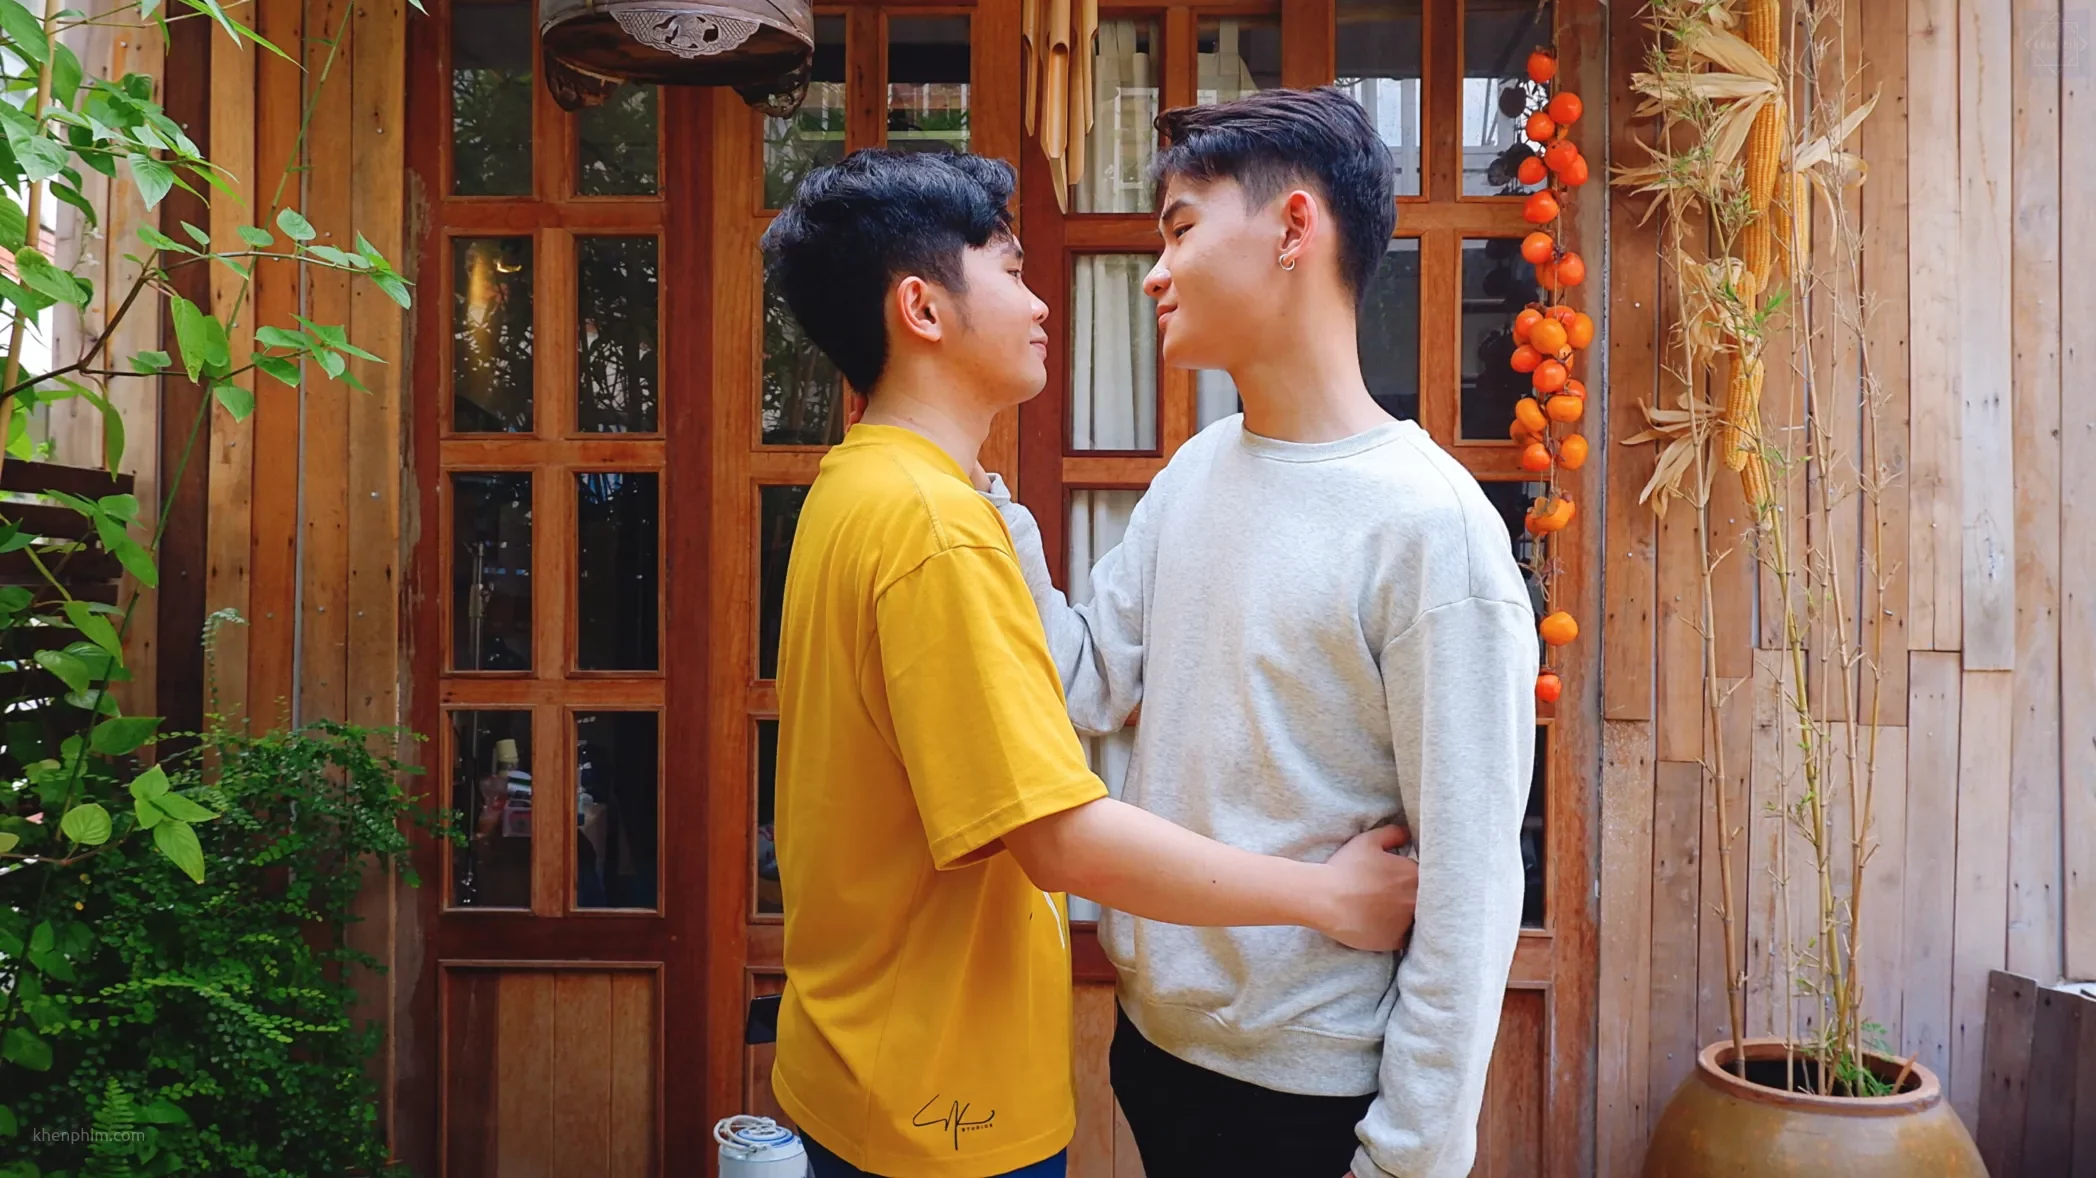 “Đã lâu không gặp”: Góc khuất học đường trong phim ngắn LGBT